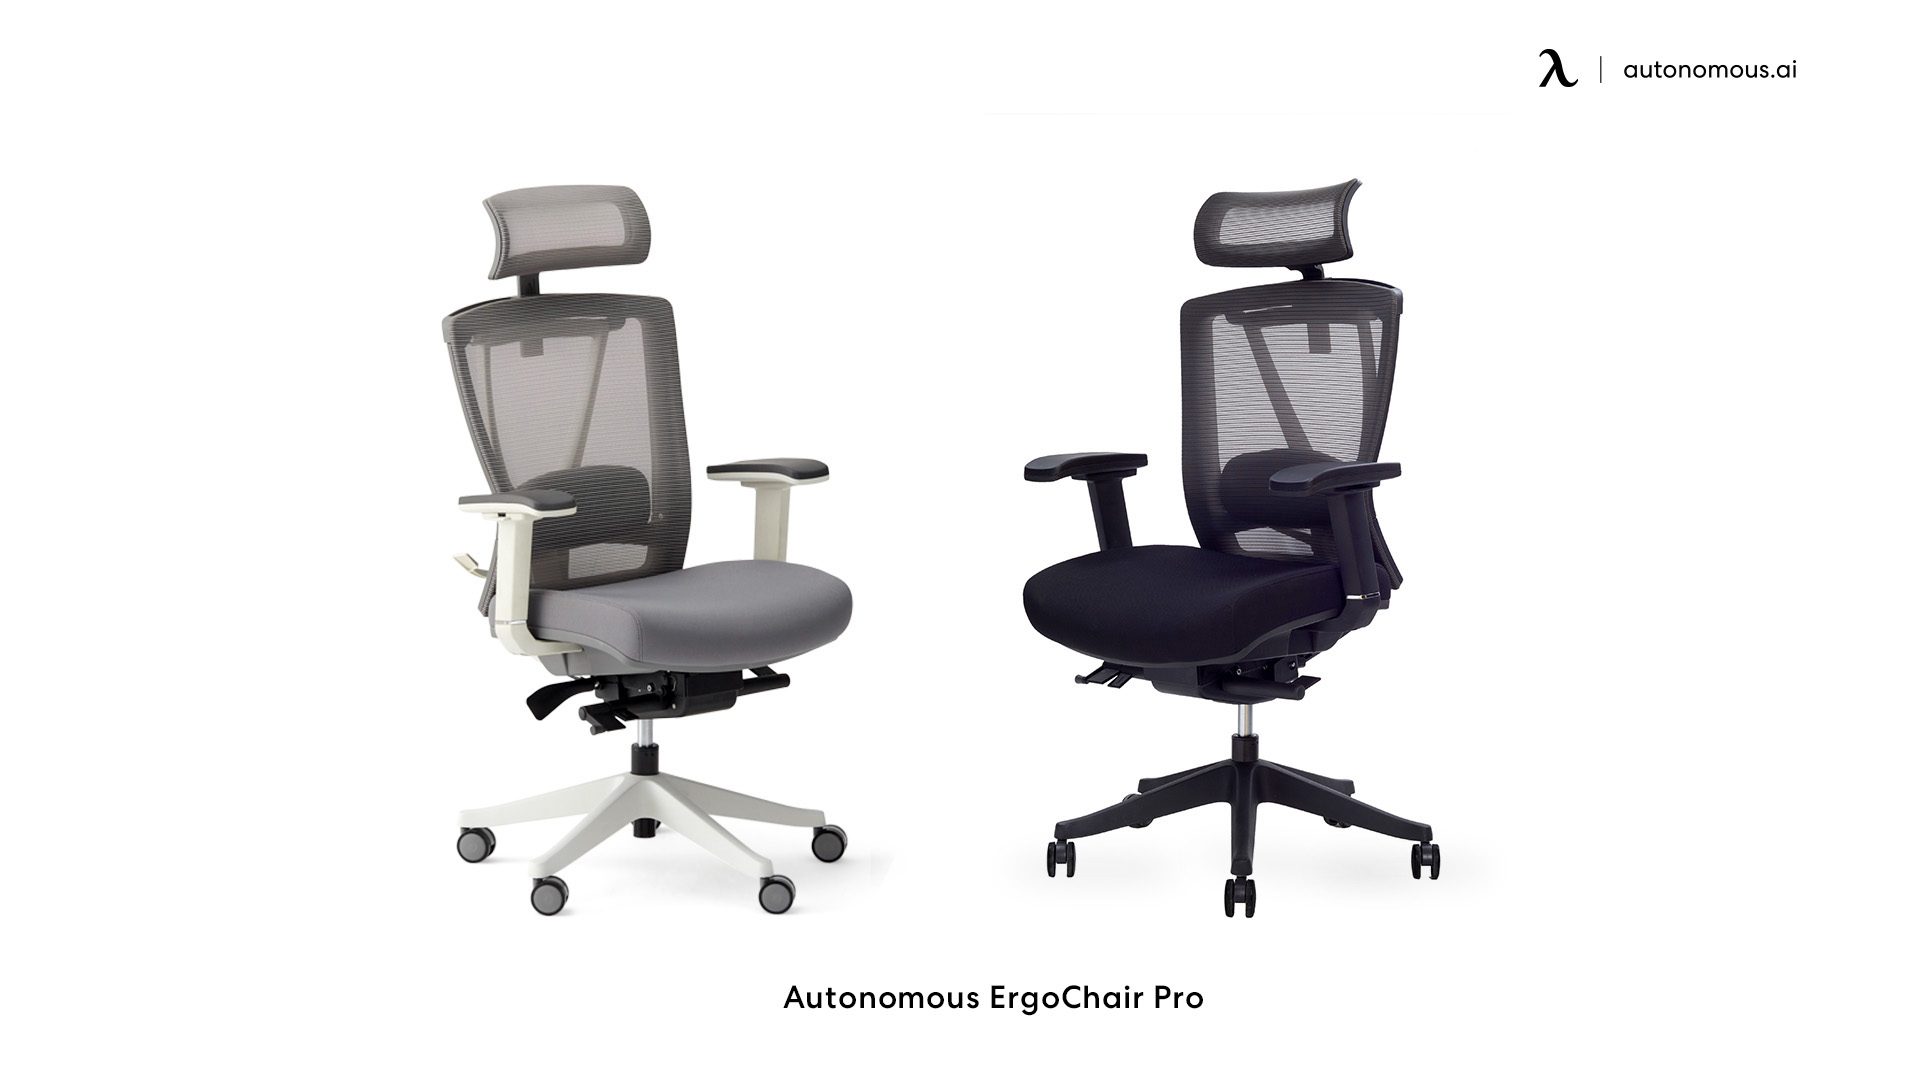 Autonomous ErgoChair Pro office chair with footrest